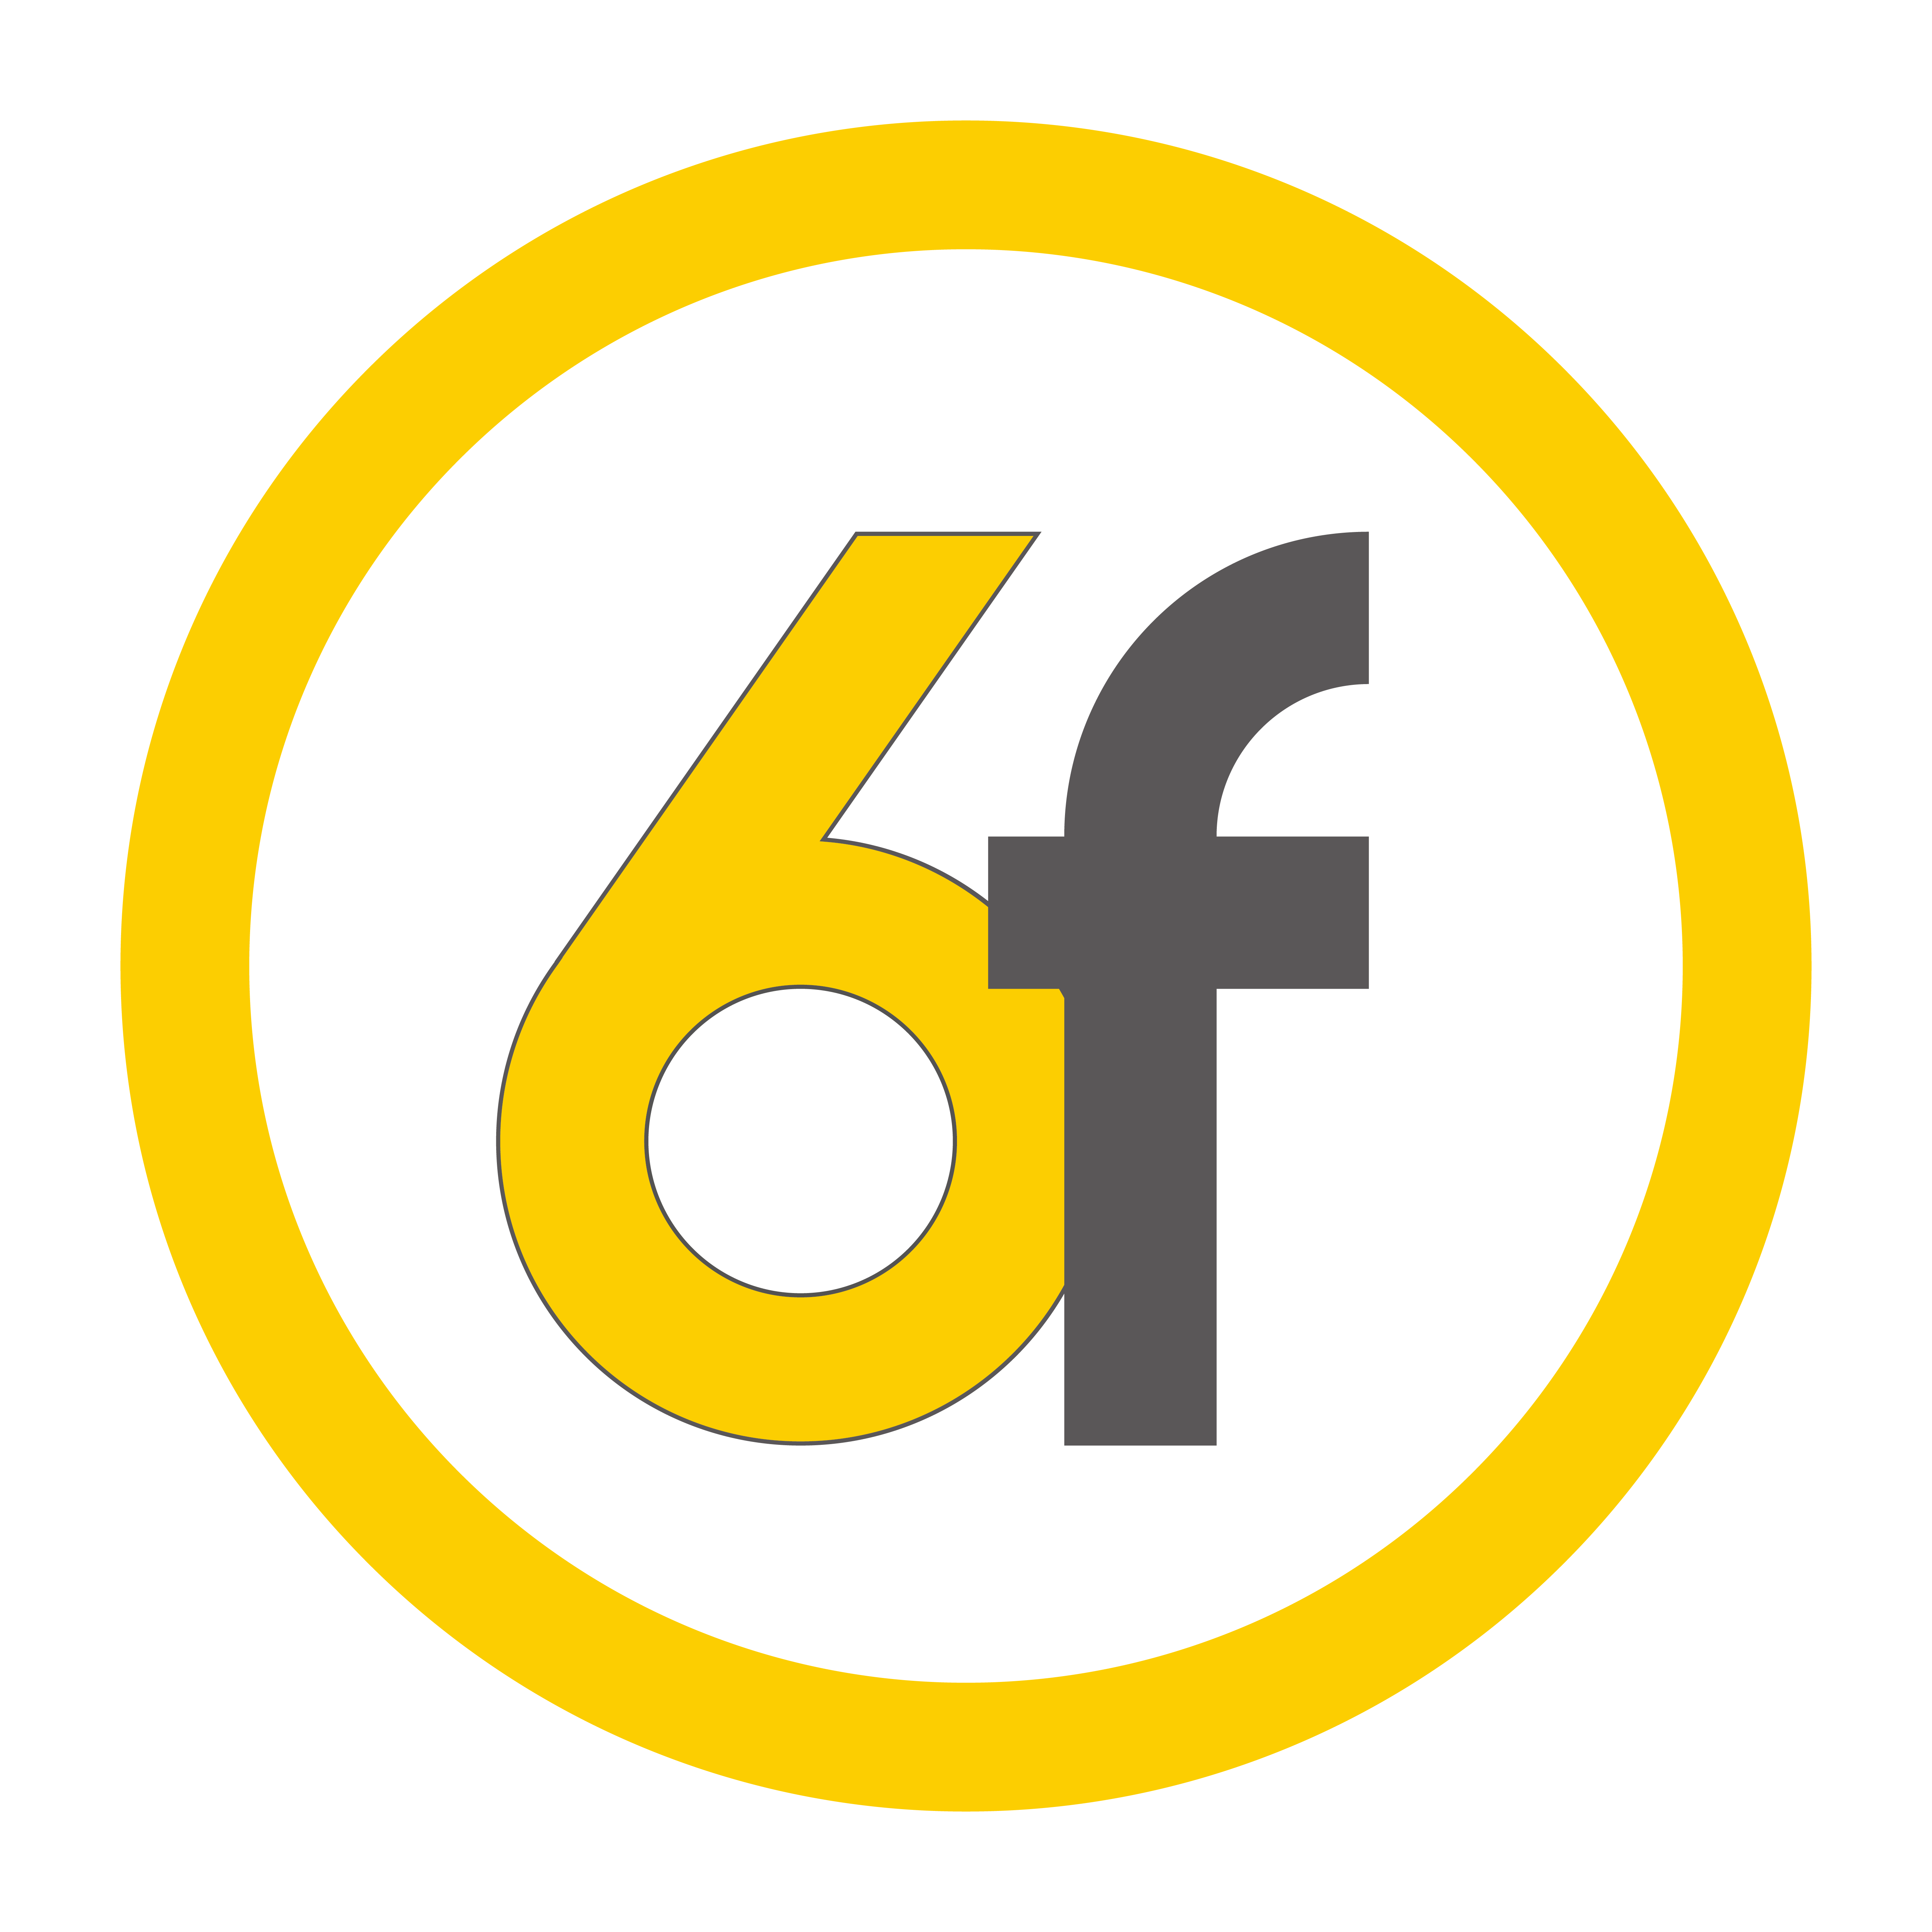 6f_symbol